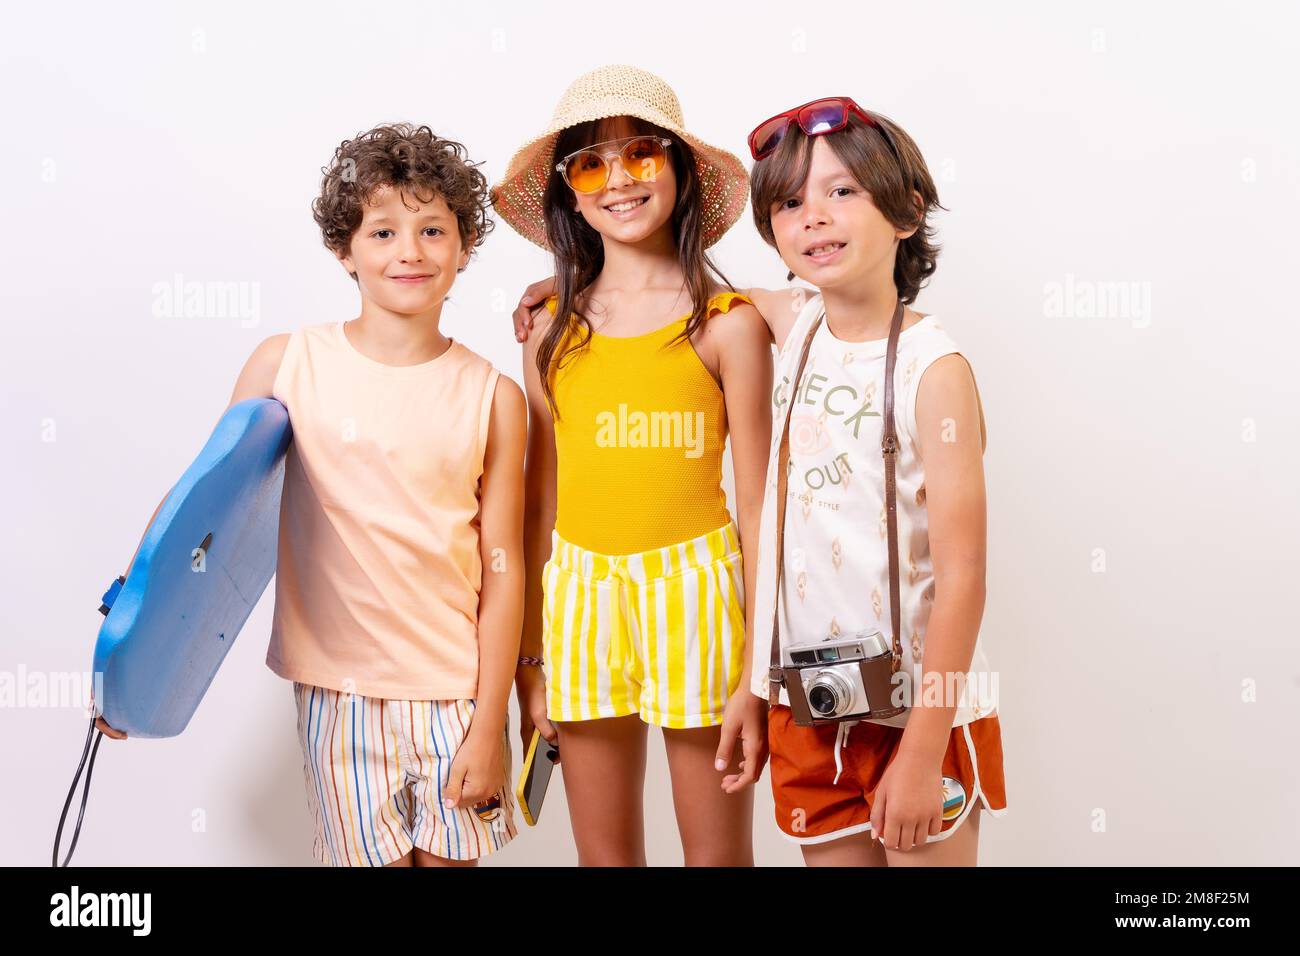 Studioaufnahme von Kindern, die im Sommerurlaub auf weißem Hintergrund lächeln Stockfoto